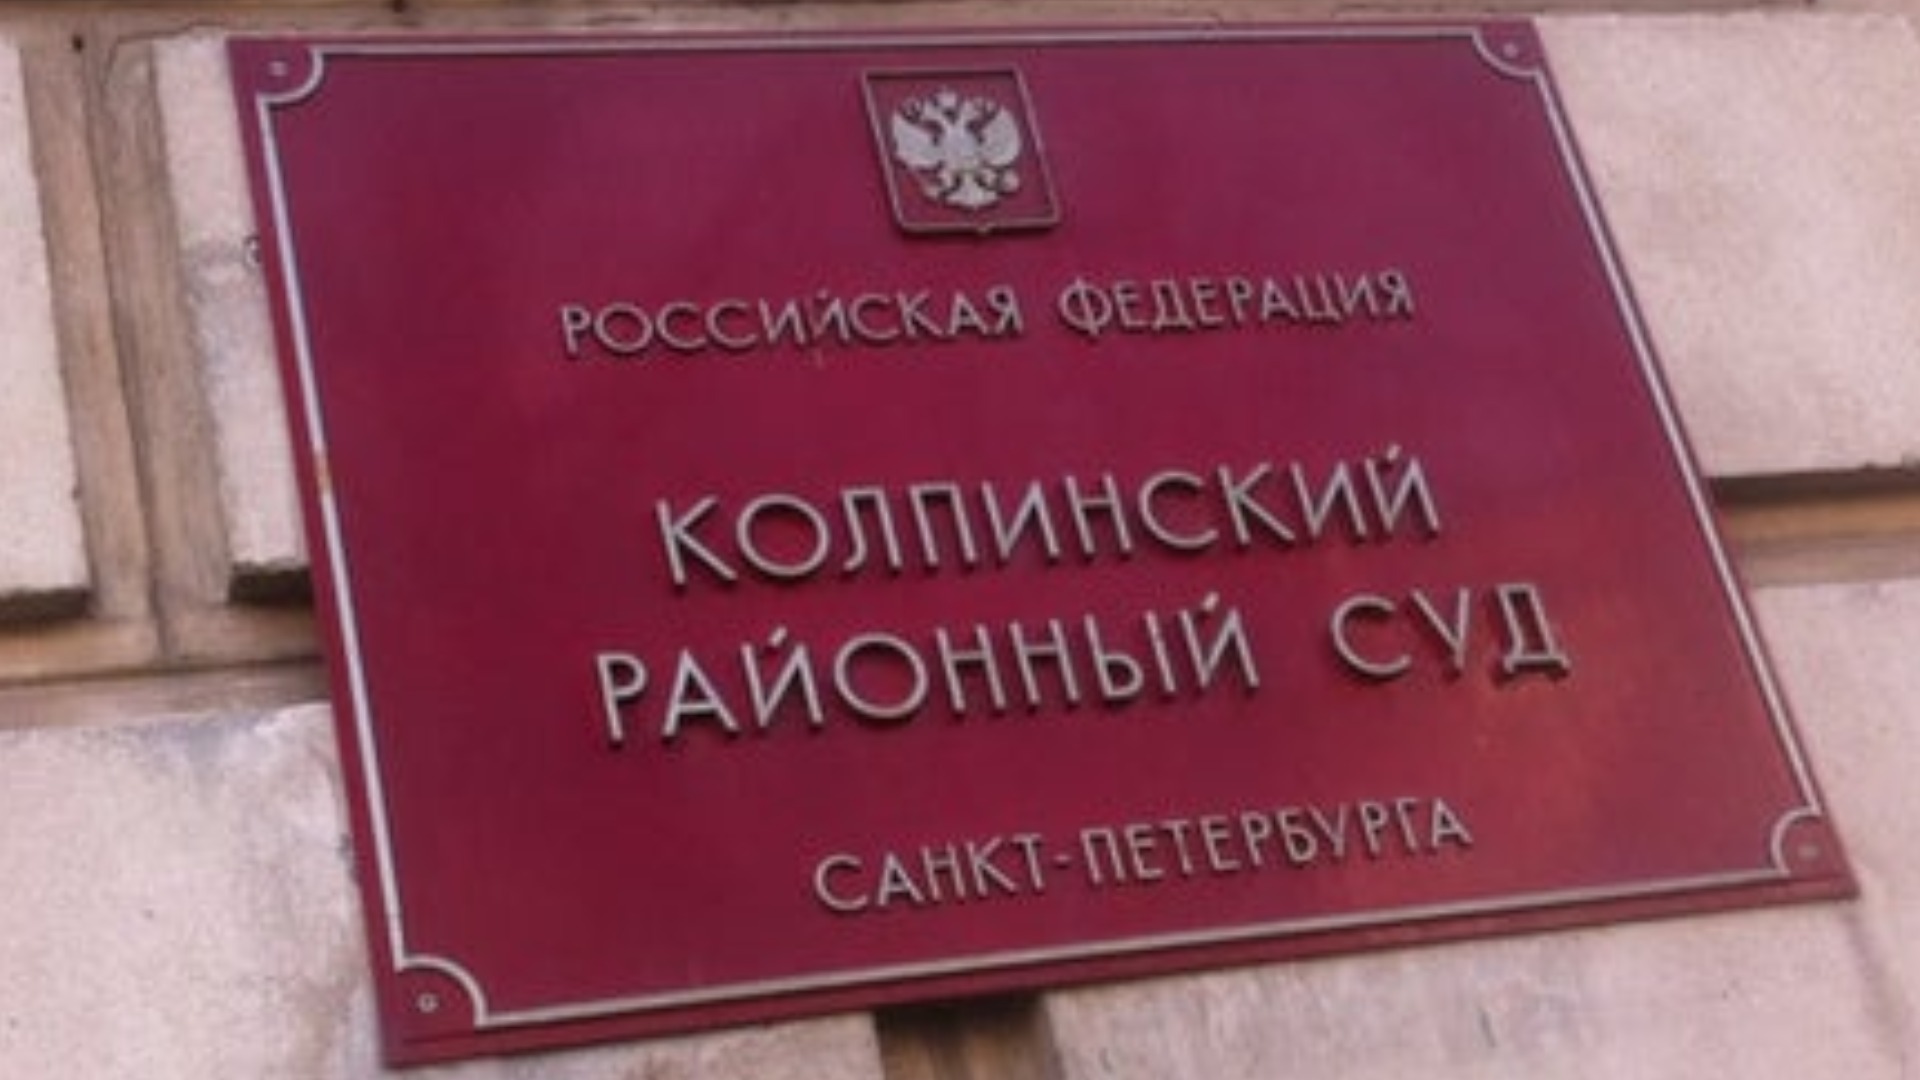 Информация по Колпинскому районному суду в Спб.